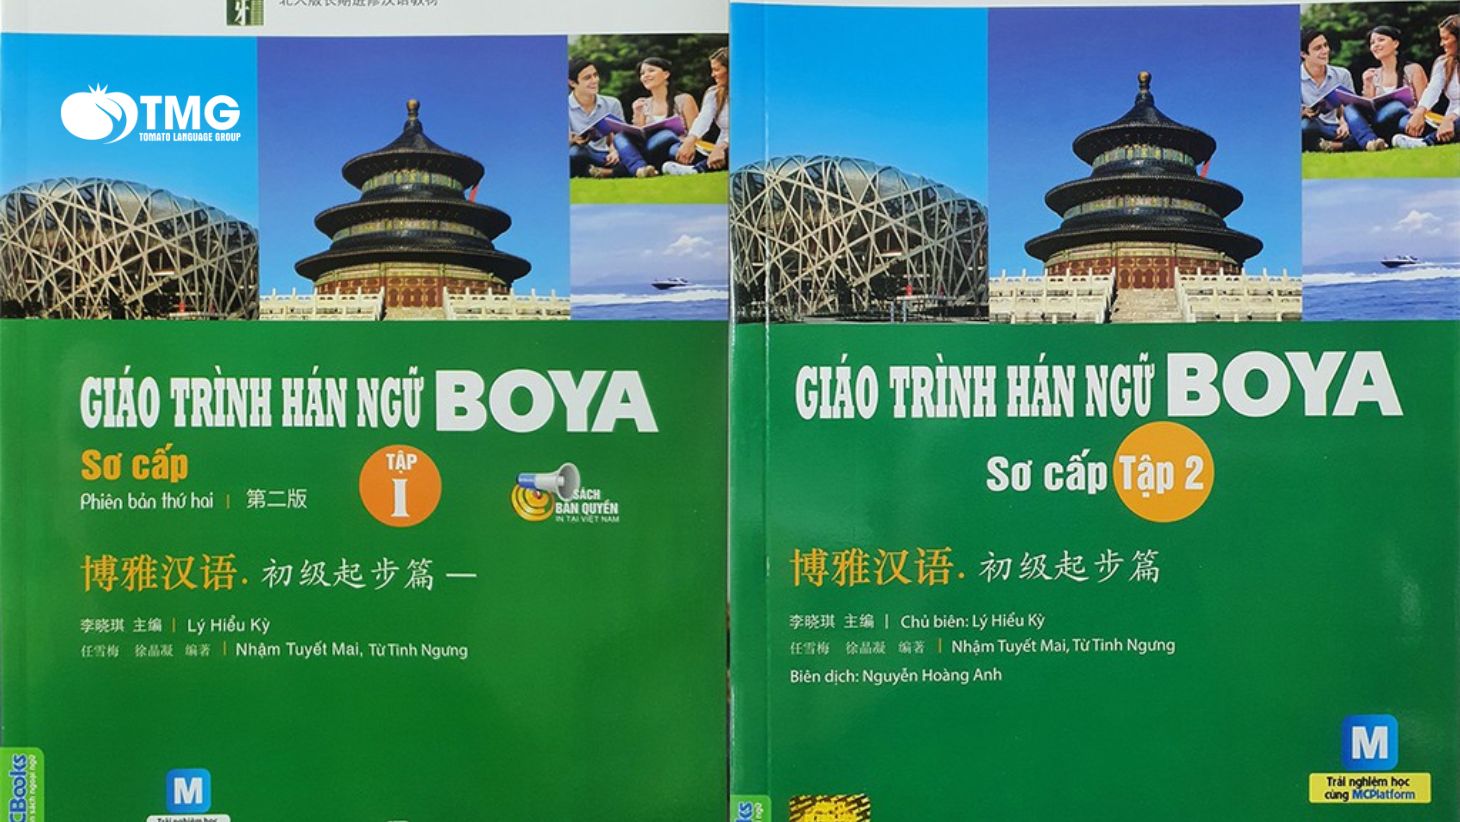 Download giáo trình Hán ngữ Boya sơ cấp 1 bản tiếng Việt MIỄN PHÍ - Ảnh 3